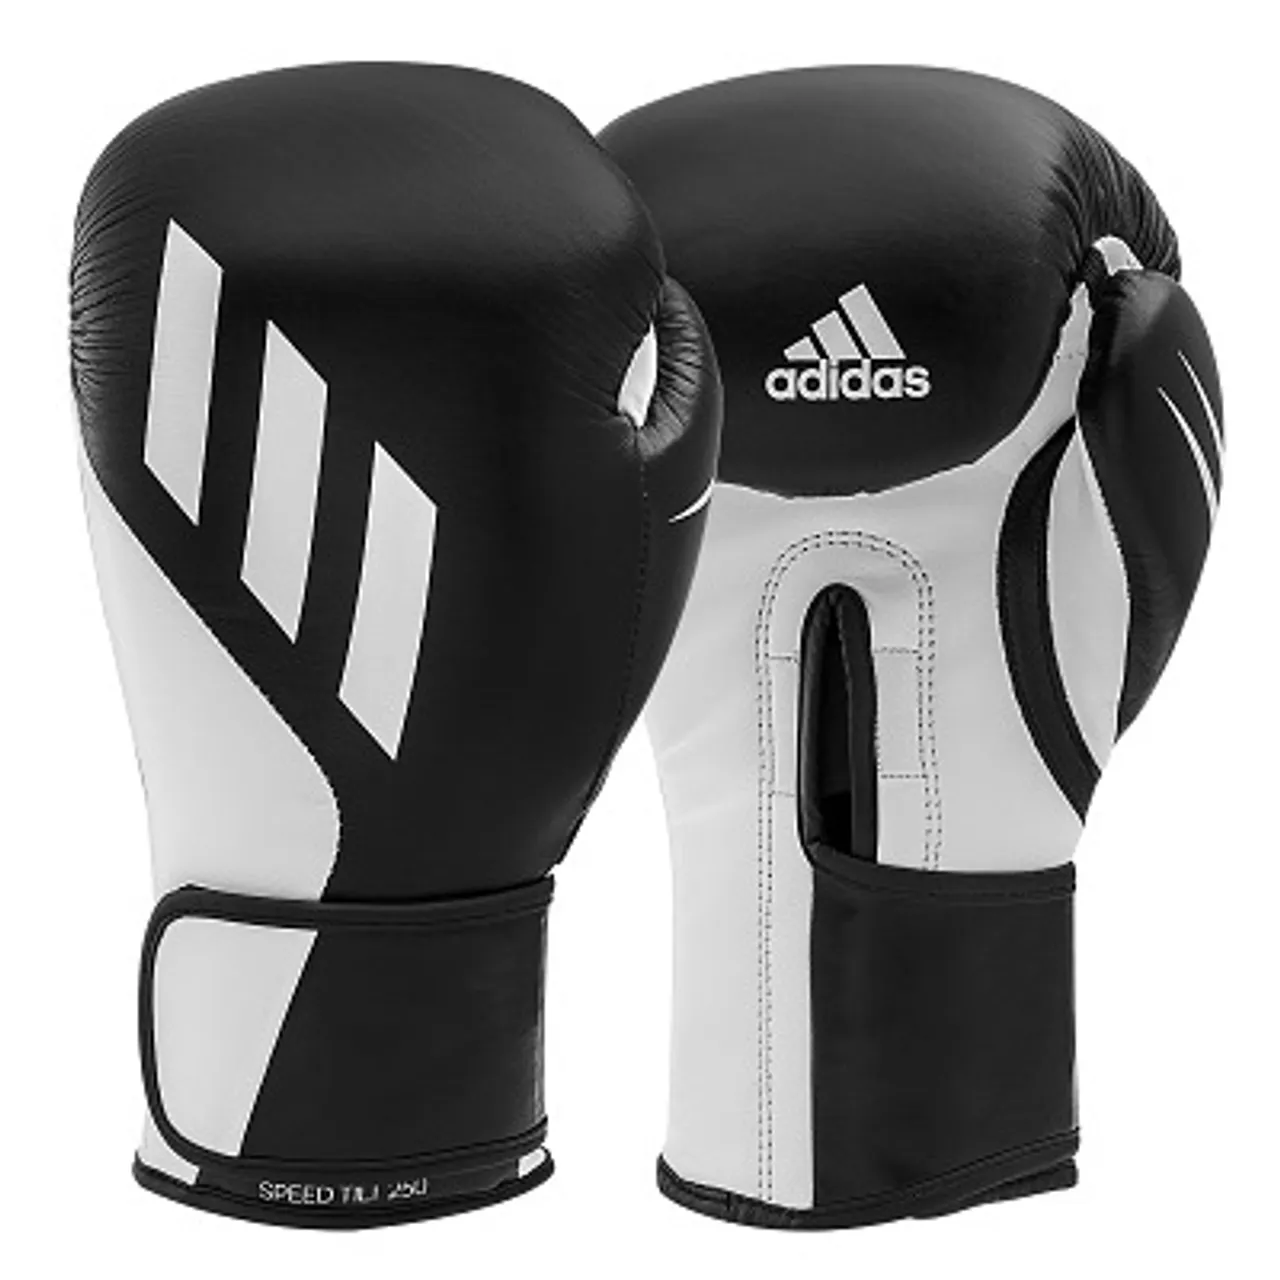 Adidas Boxhandschuhe "Speed Tilt 250", 12 oz., Rot-Weiß